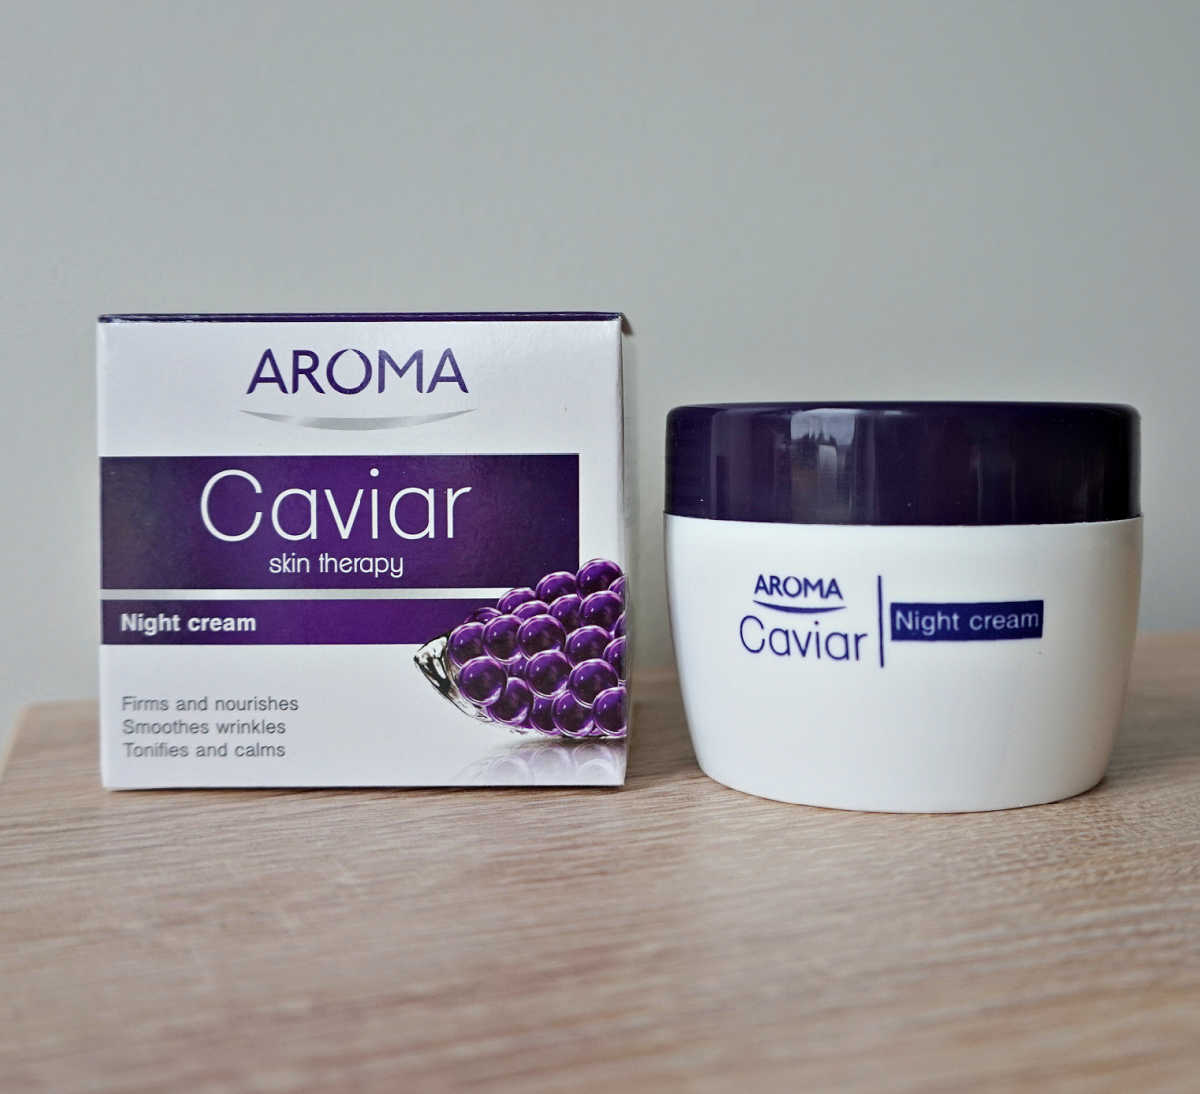 Aroma Caviar Skin Therapy Night Cream review.